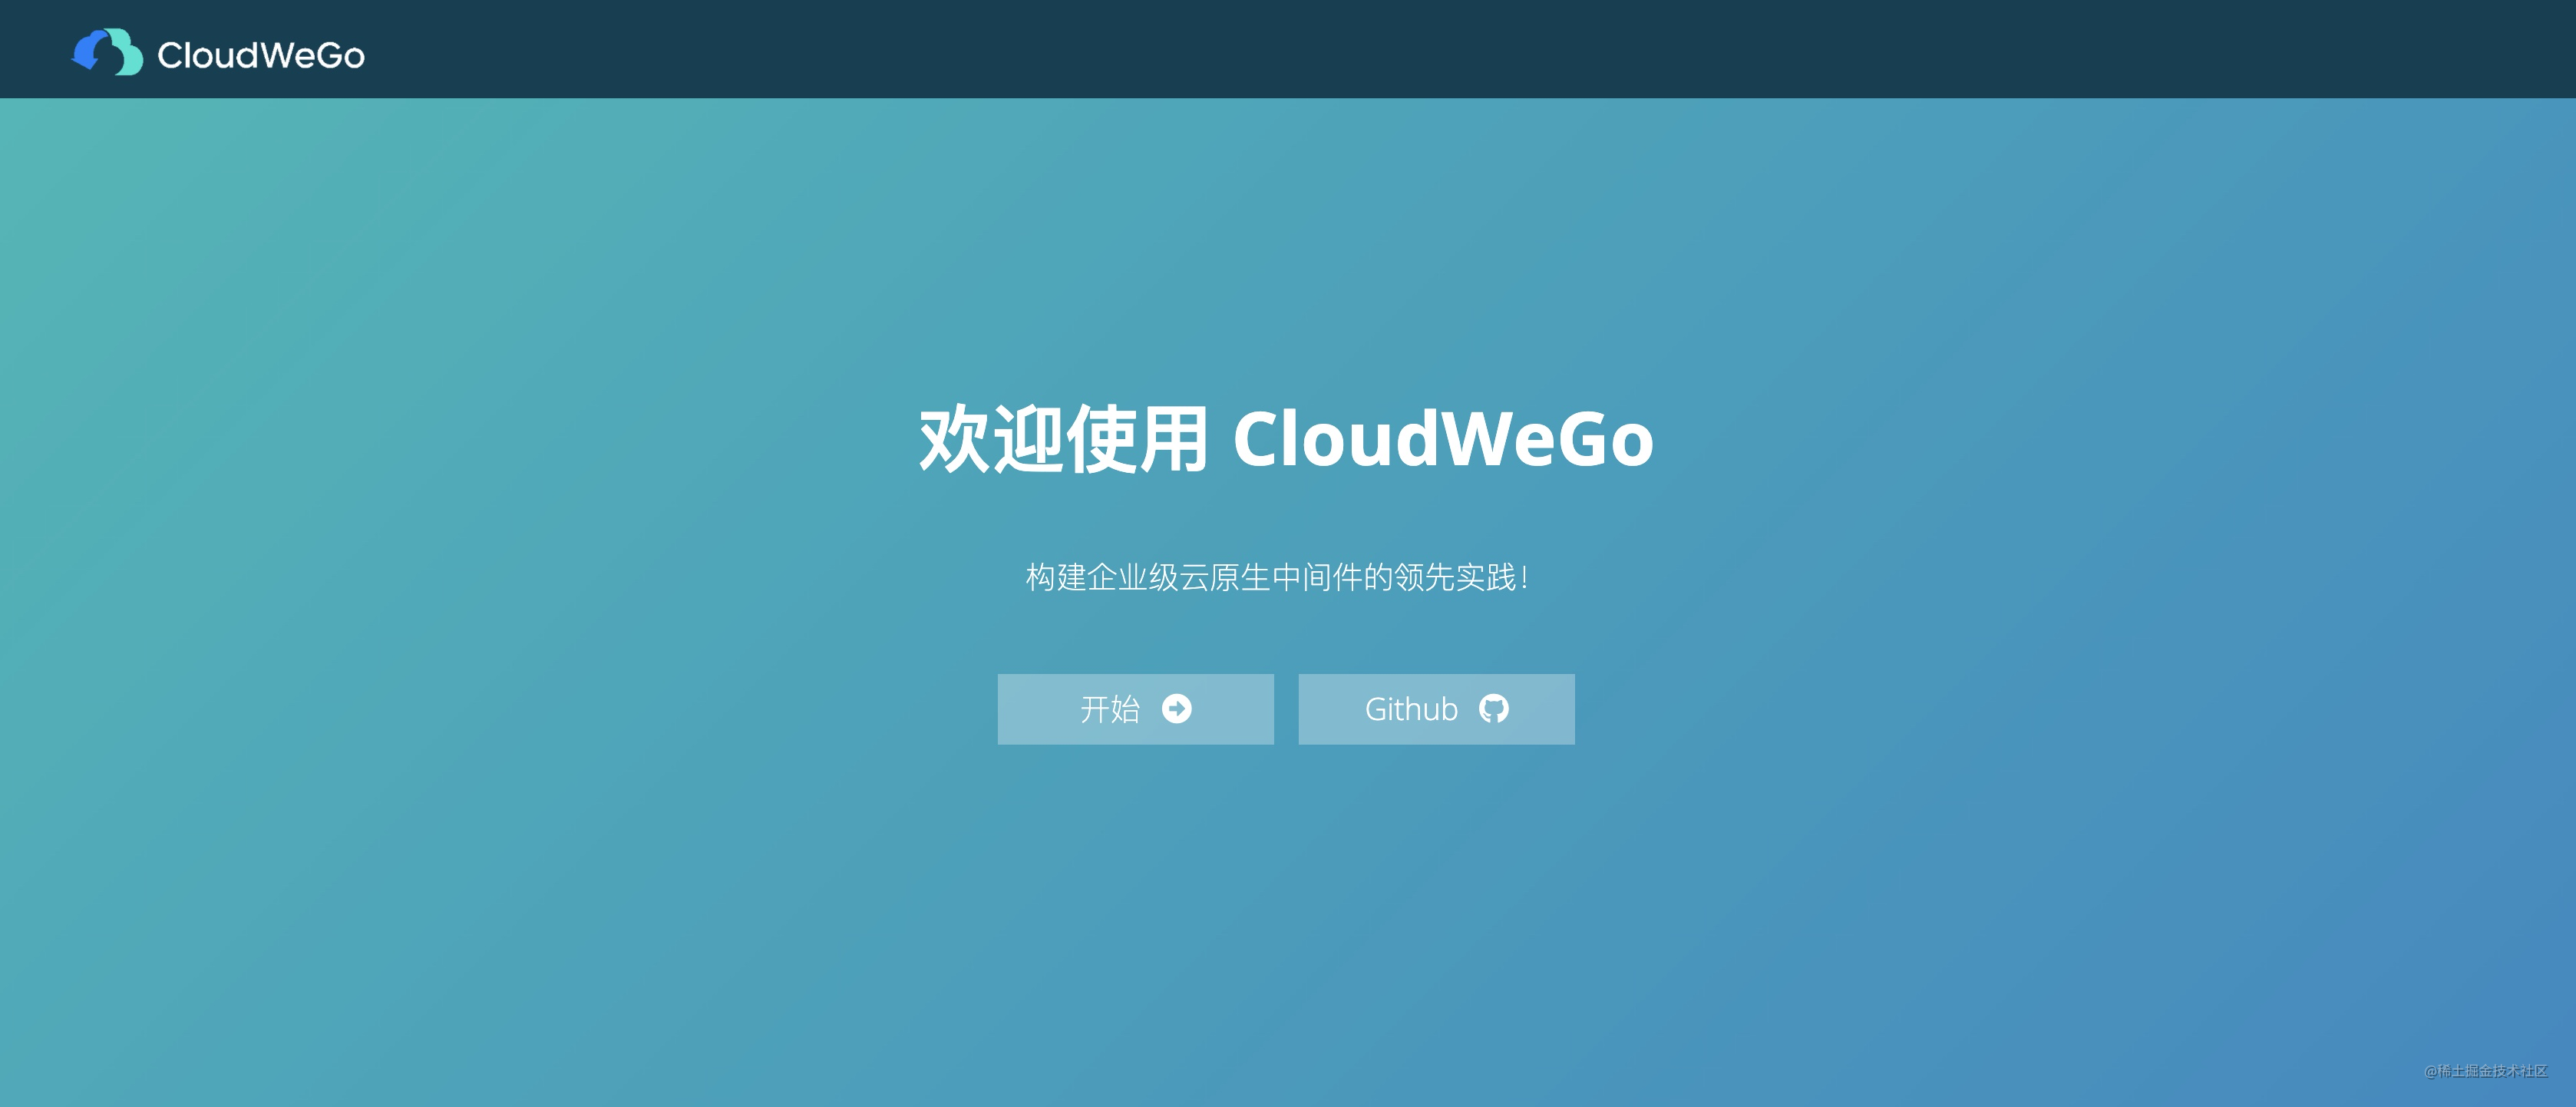 CloudWeGo